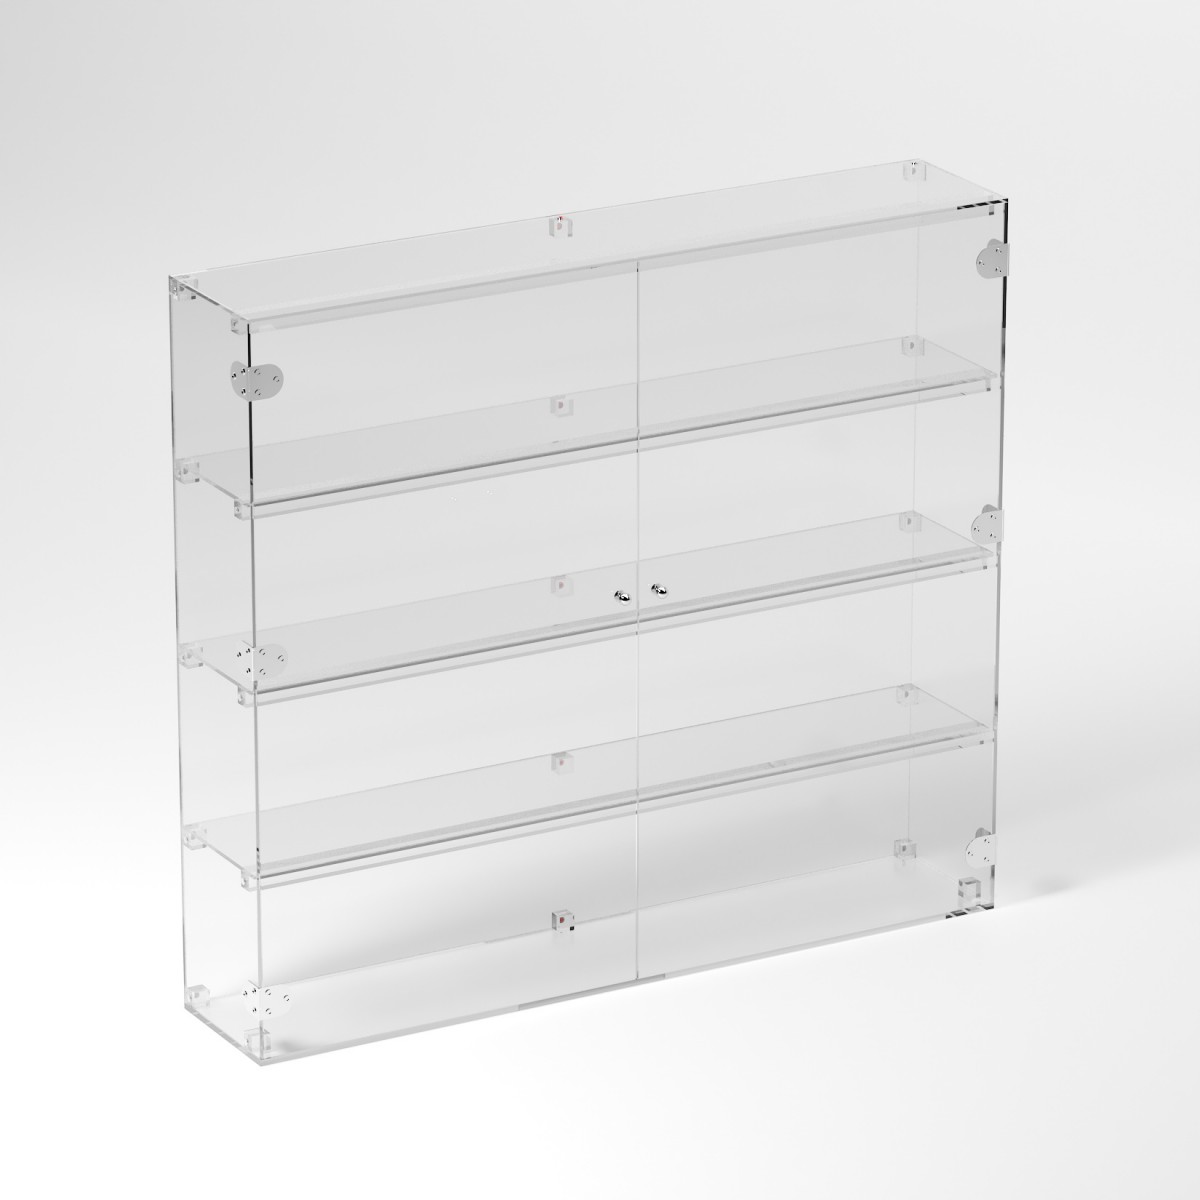 E-895 VET - Ampia vetrina espositiva in plexiglass trasparente a 4 ripiani - Misure: 100 x 20 x h90 cm